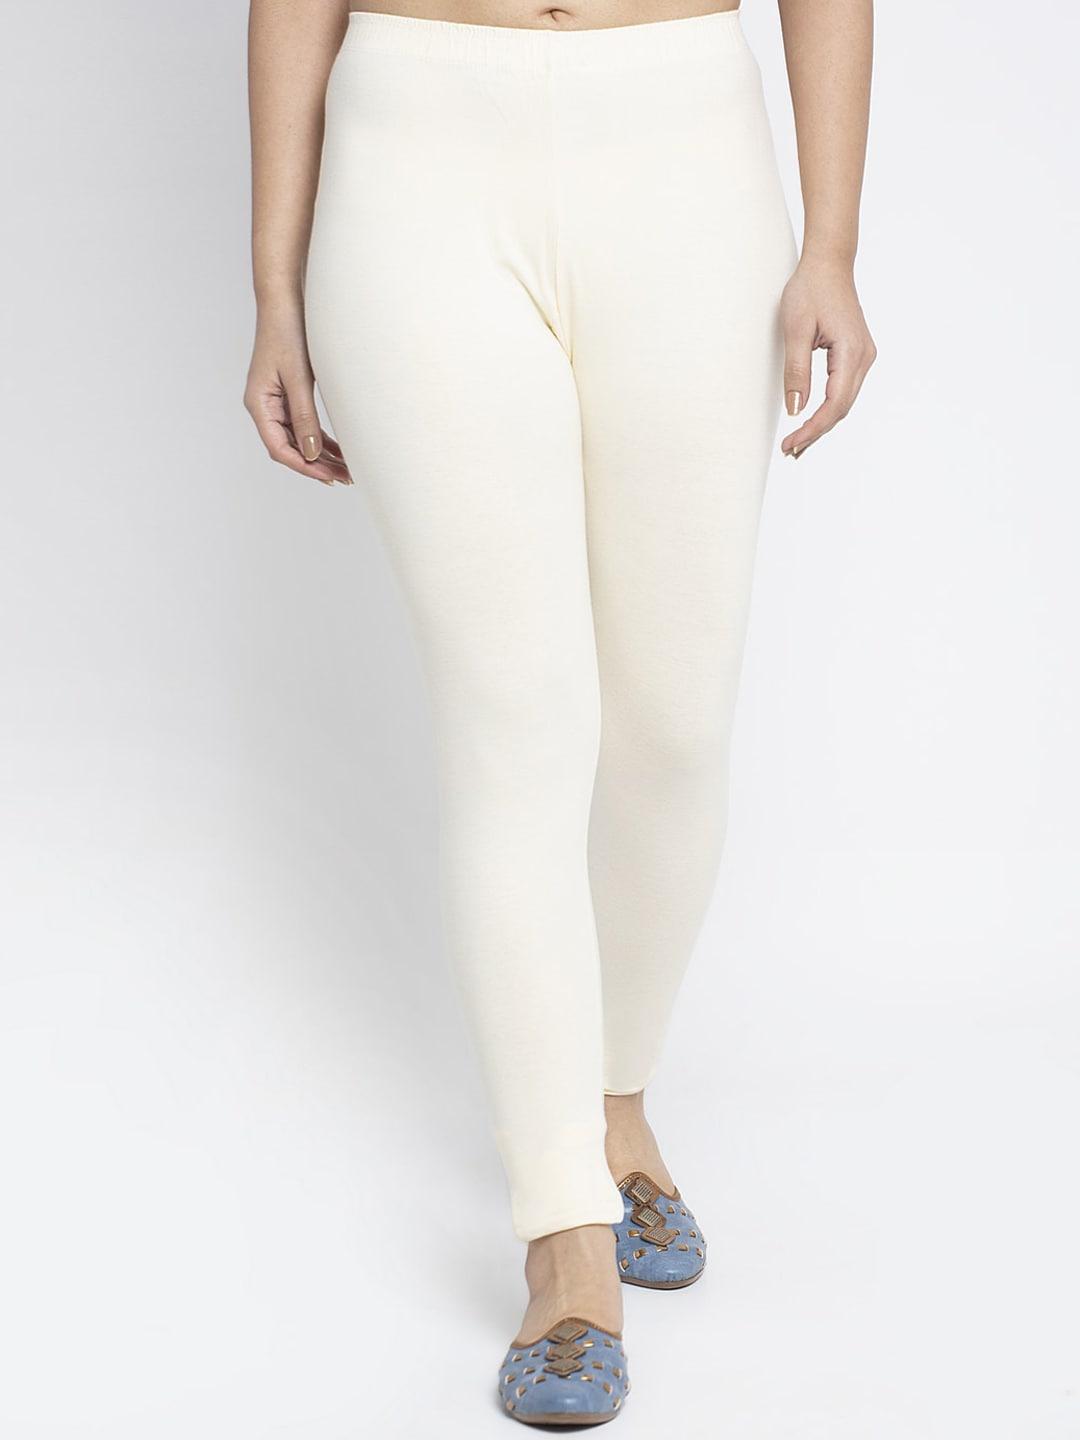 gracit-women-white-leggings